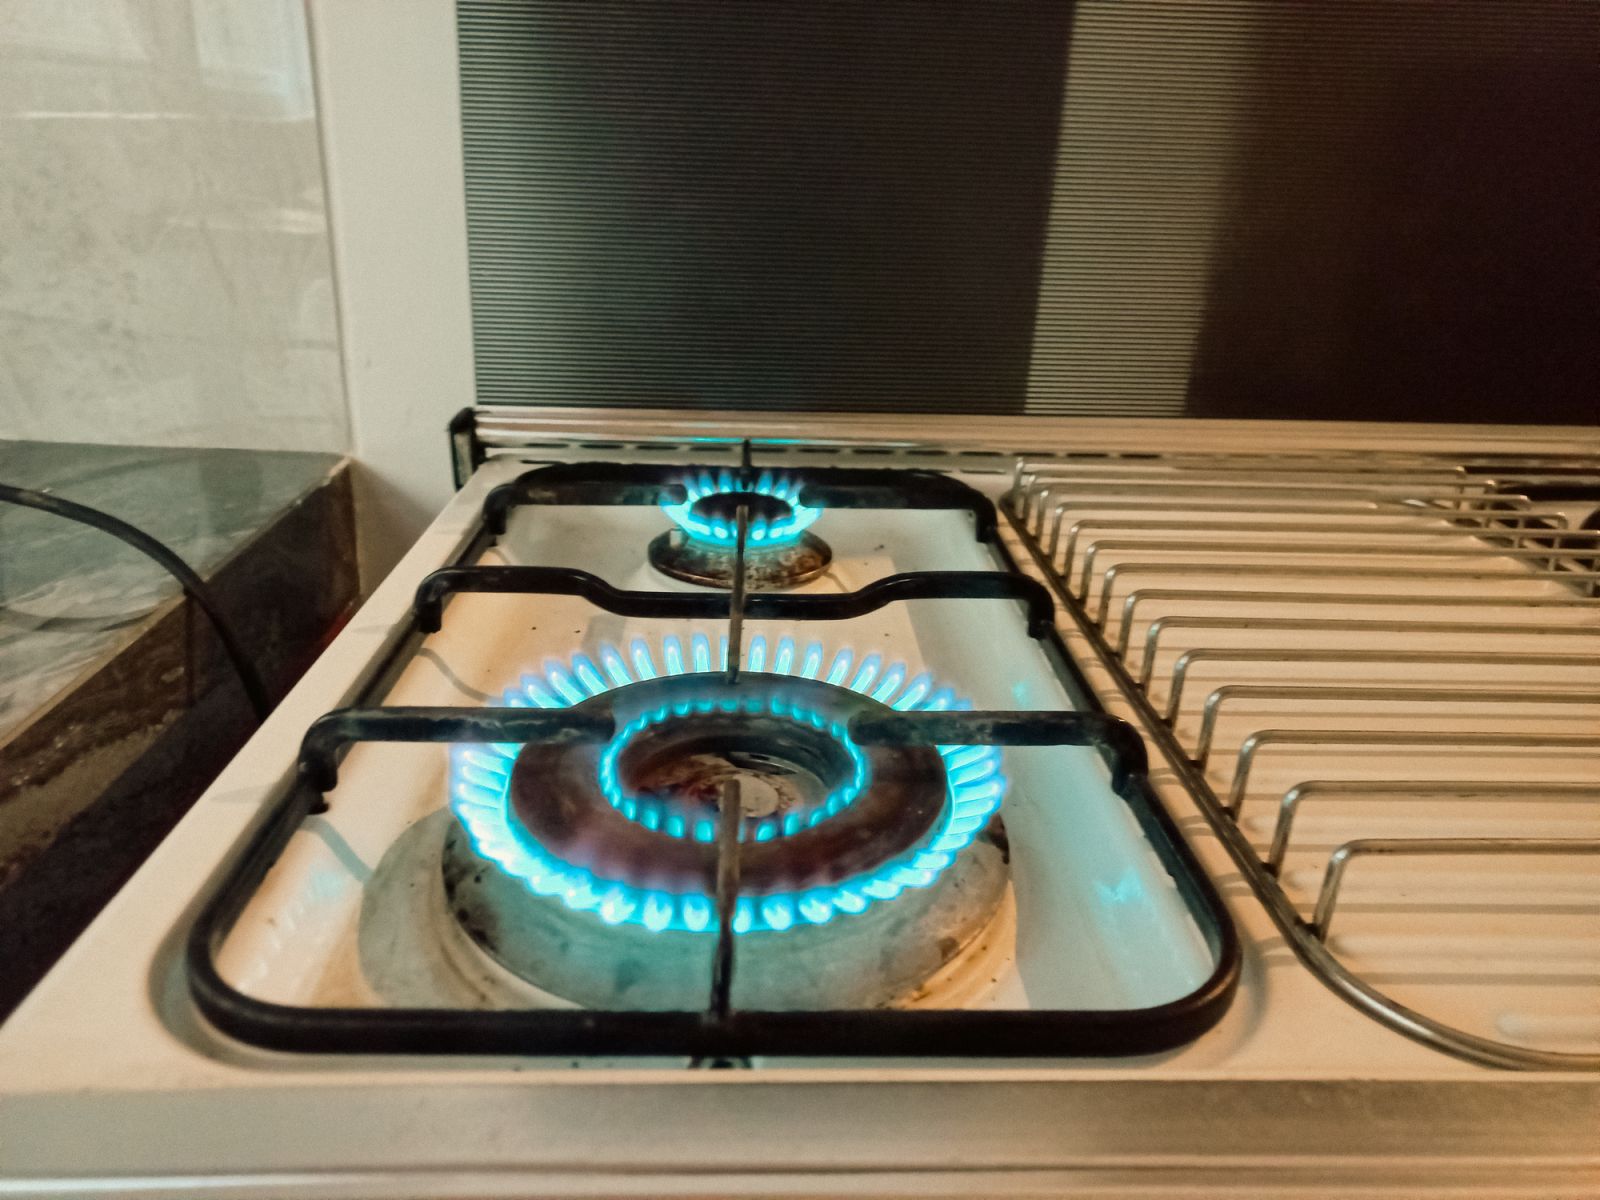 Natural Gas - Natural gas burners stove by Yori Meirizan via iStock